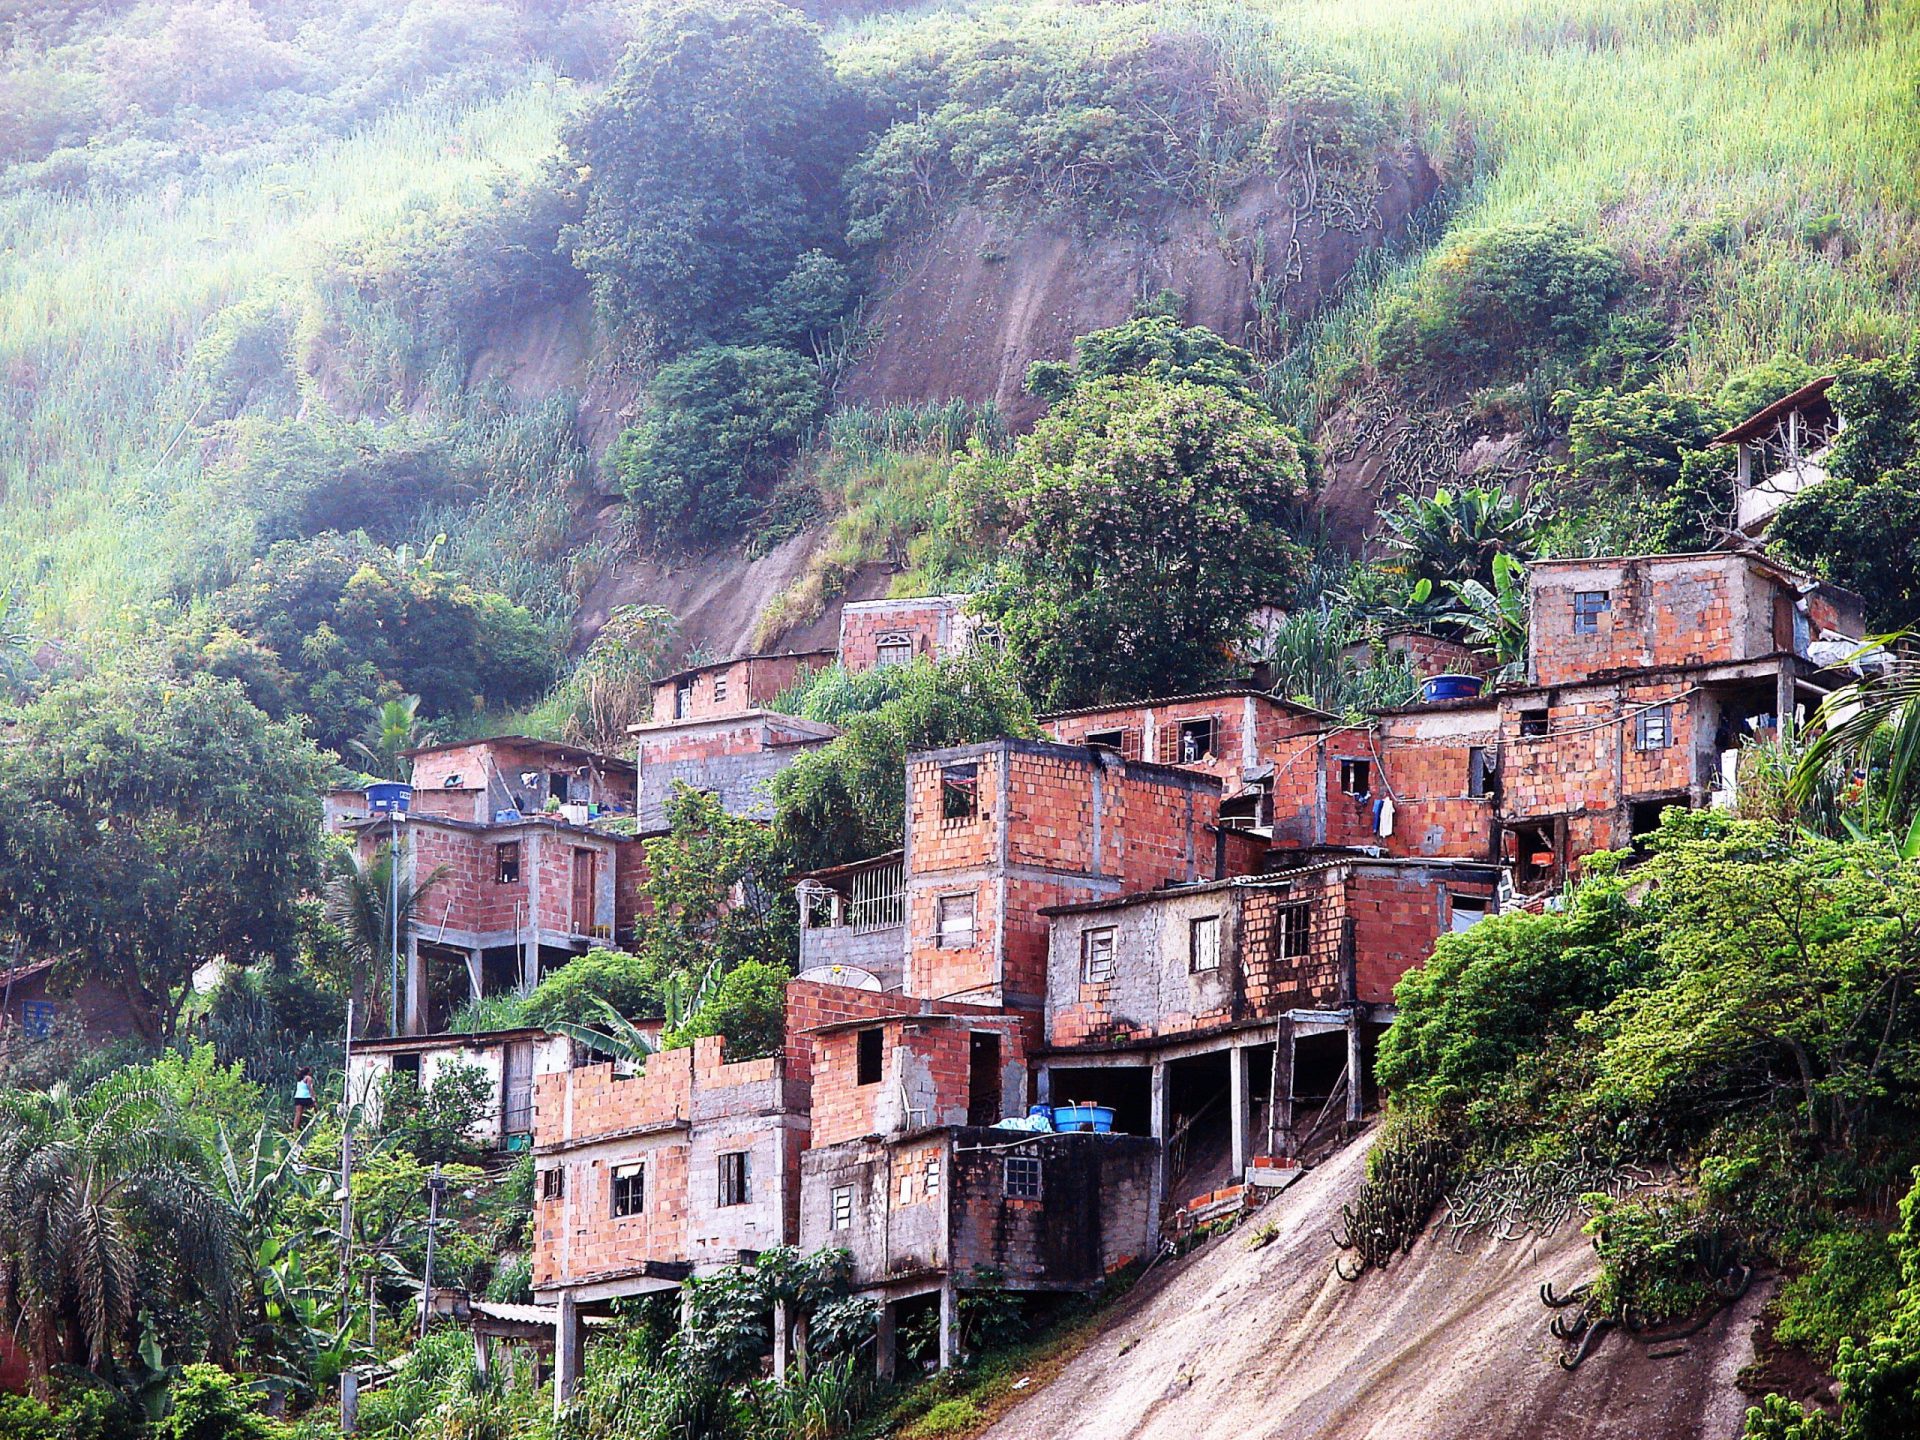 Mulher morta numa favela após erro no GPS